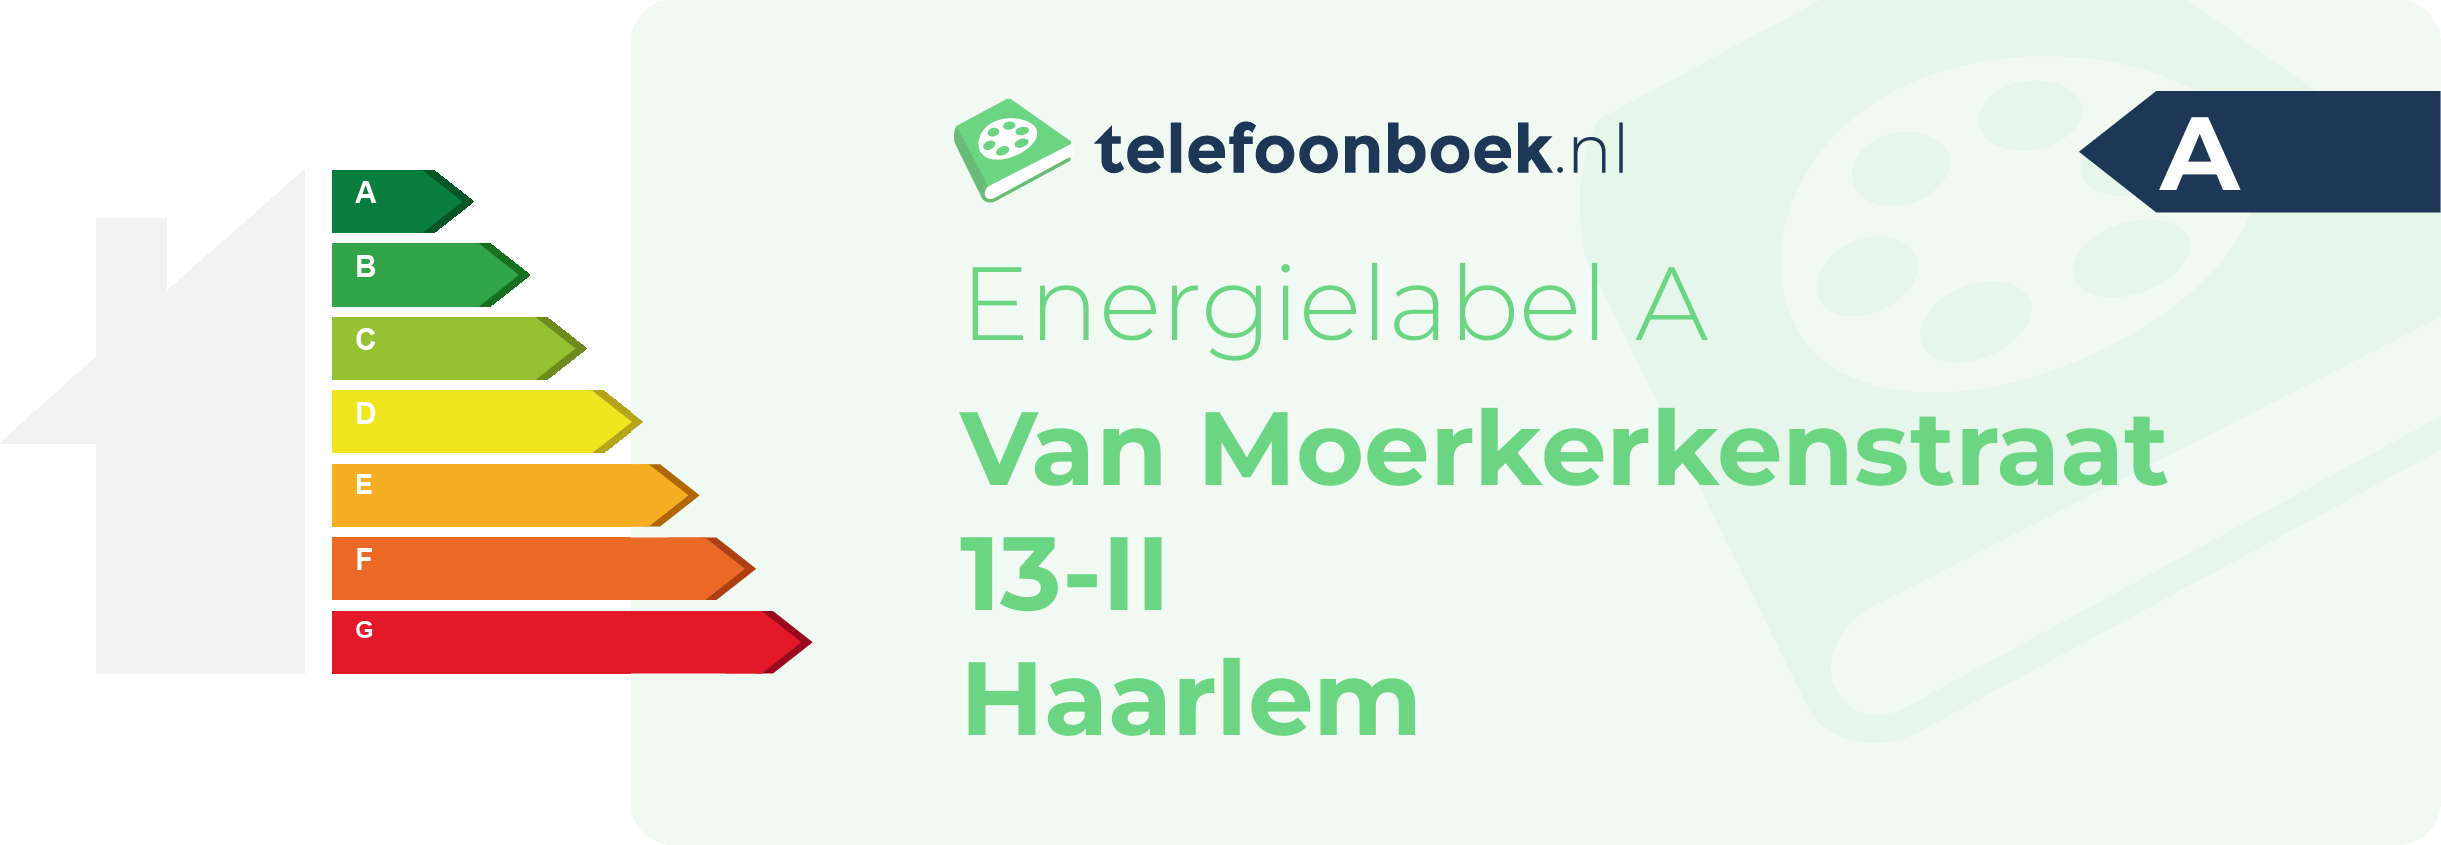 Energielabel Van Moerkerkenstraat 13-II Haarlem